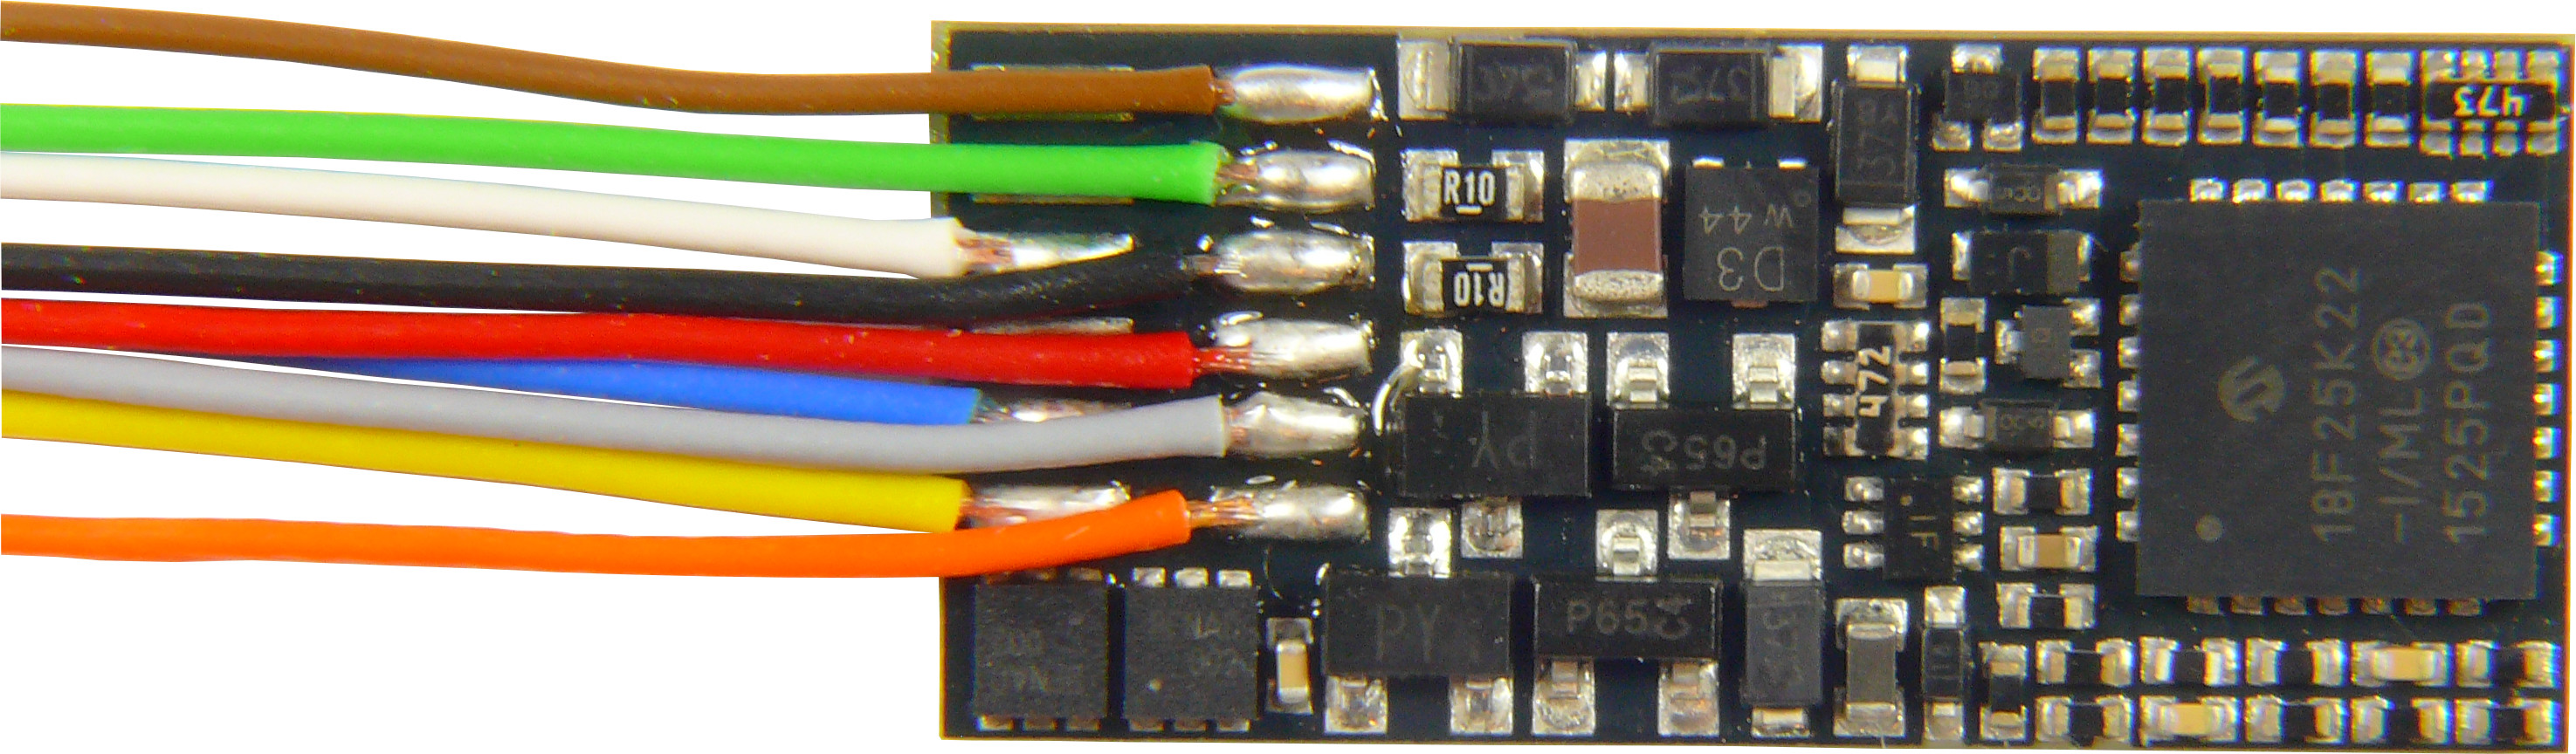 Zimo MX600 - Flachdecoder 0,8A, 4 Funktionsausgänge, 9 offene Kabelenden